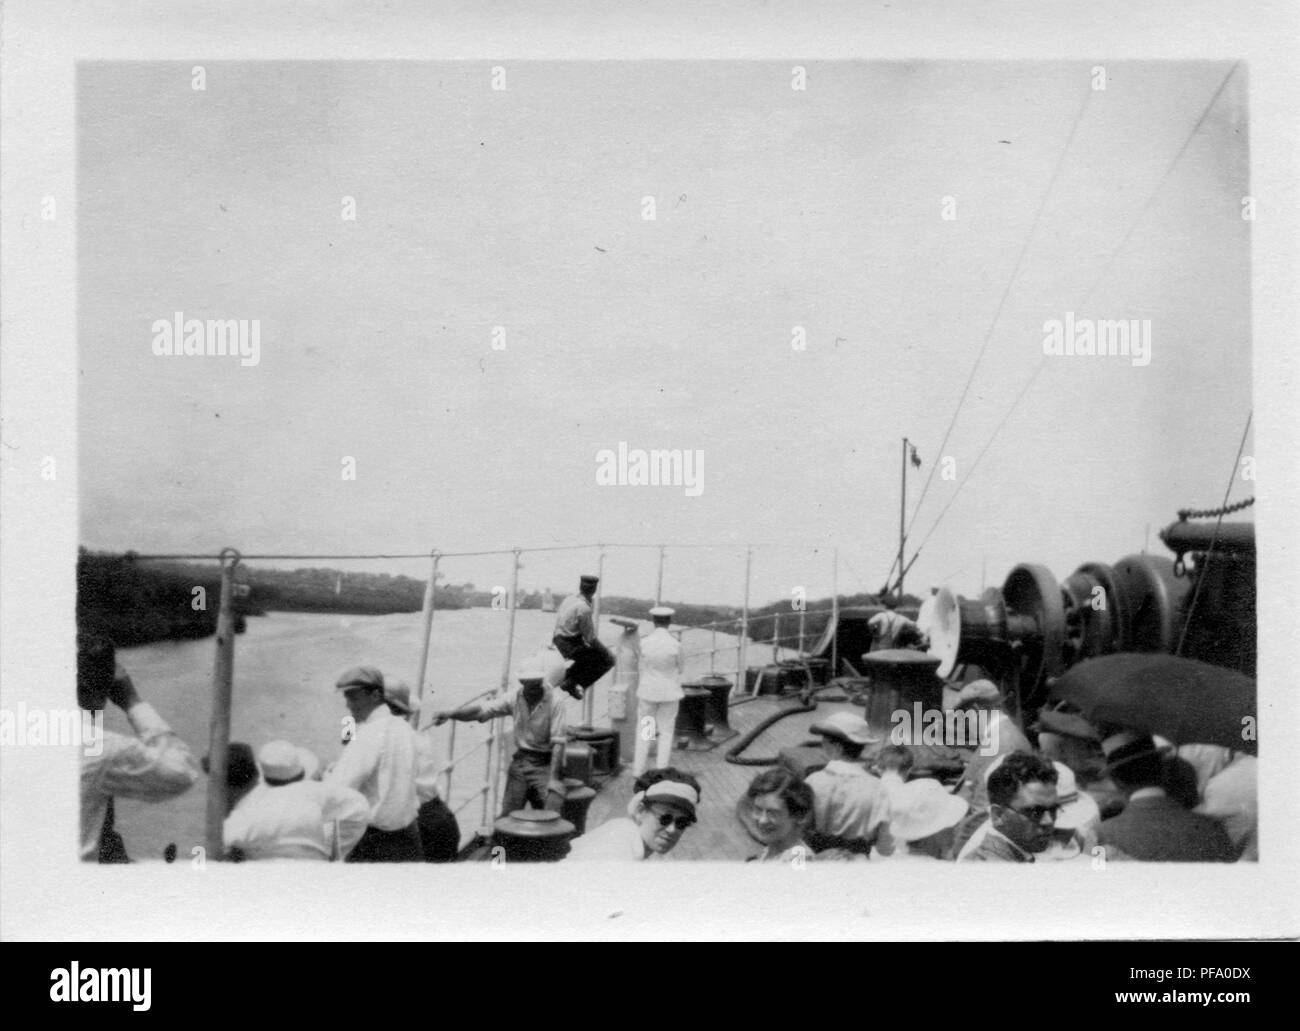 Photographie noir et blanc, tourné à partir d'un angle élevé, montrant un groupe de personnes, y compris les passagers et équipage, un peu se tourna face à la caméra, puisqu'elles se tiennent sur le pont d'un navire qui est la navigation dans le canal de Panama, avec les banques de la terre visible sur chaque côté et d'un verrou dans la distance, 1915. () Banque D'Images